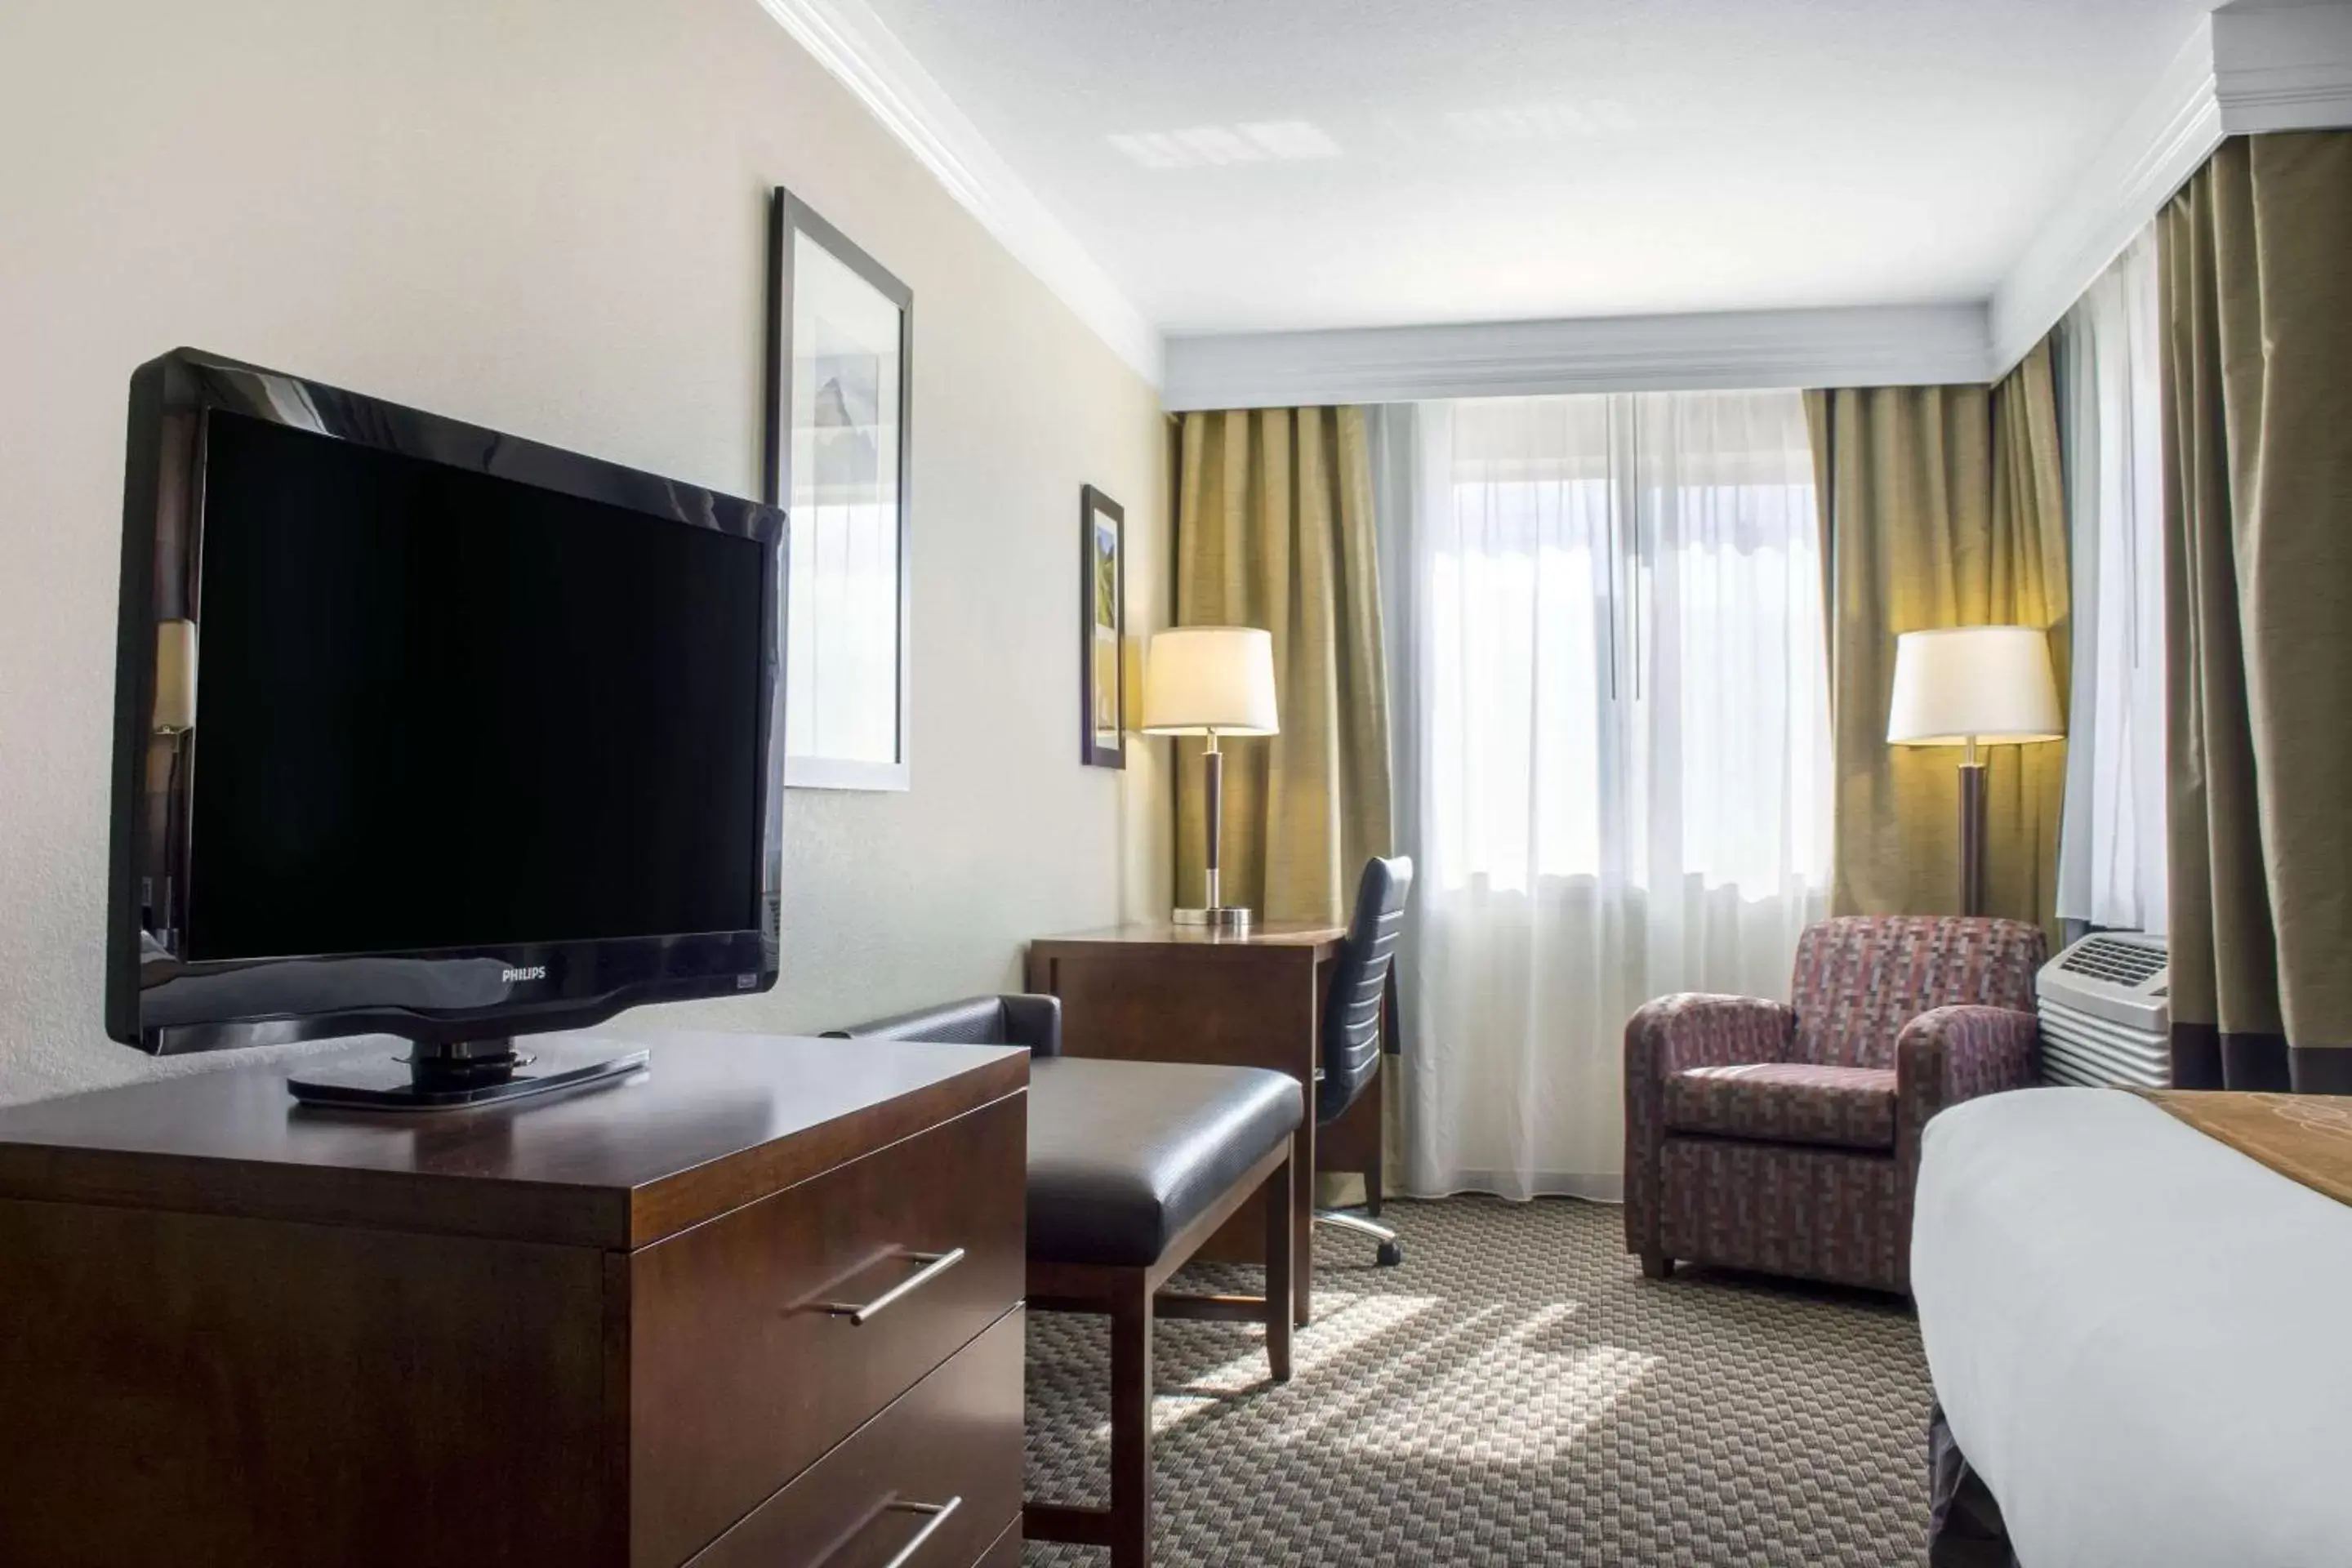 Bedroom, TV/Entertainment Center in Comfort Inn & Suites Durango